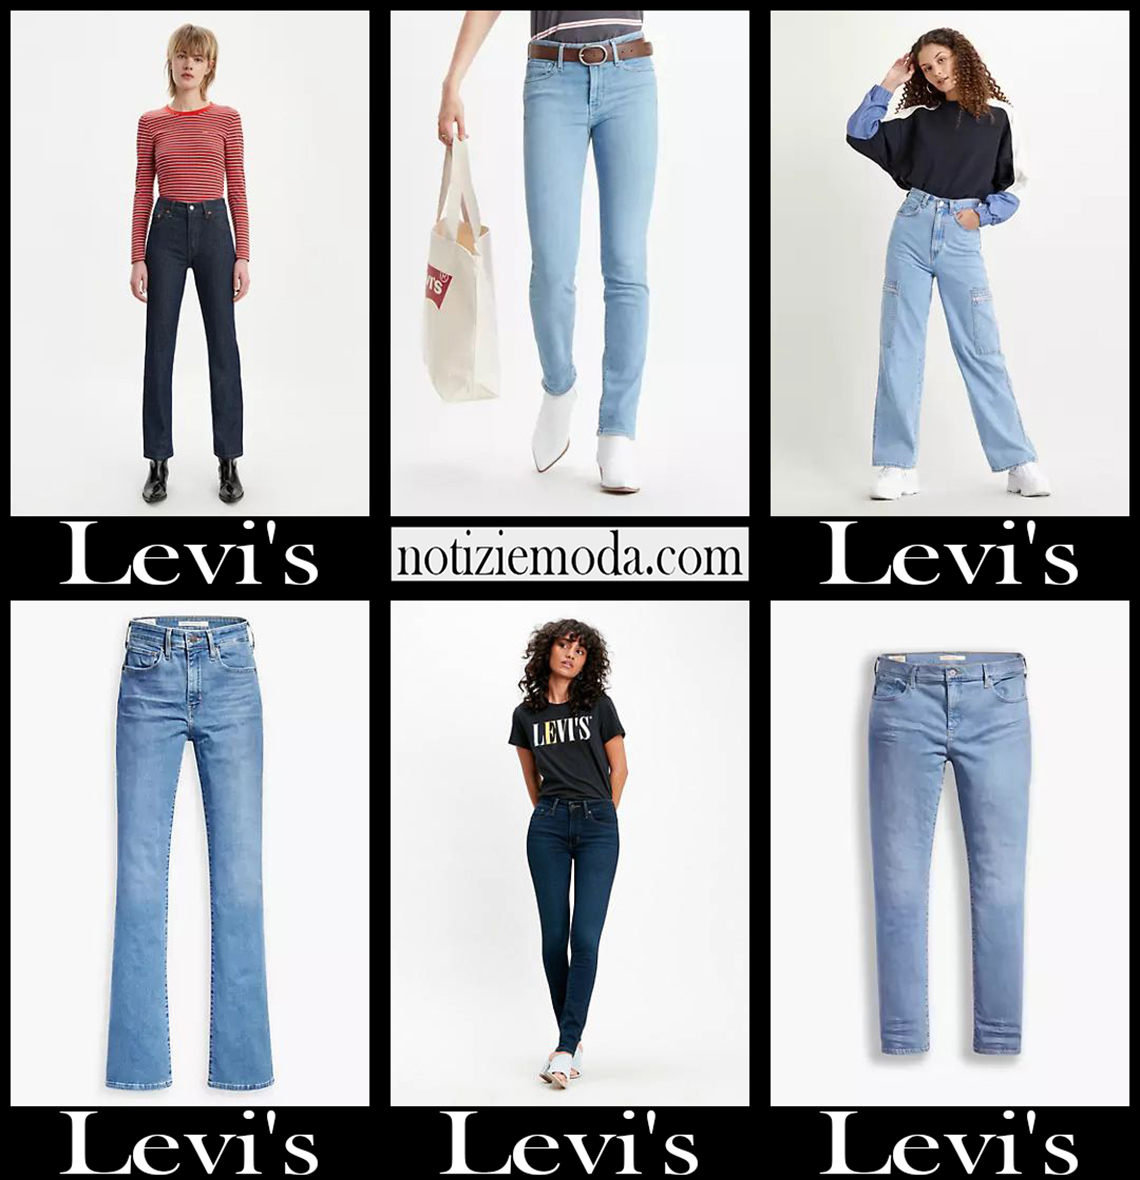 Nuovi arrivi jeans Levis 2021 abbigliamento denim donna